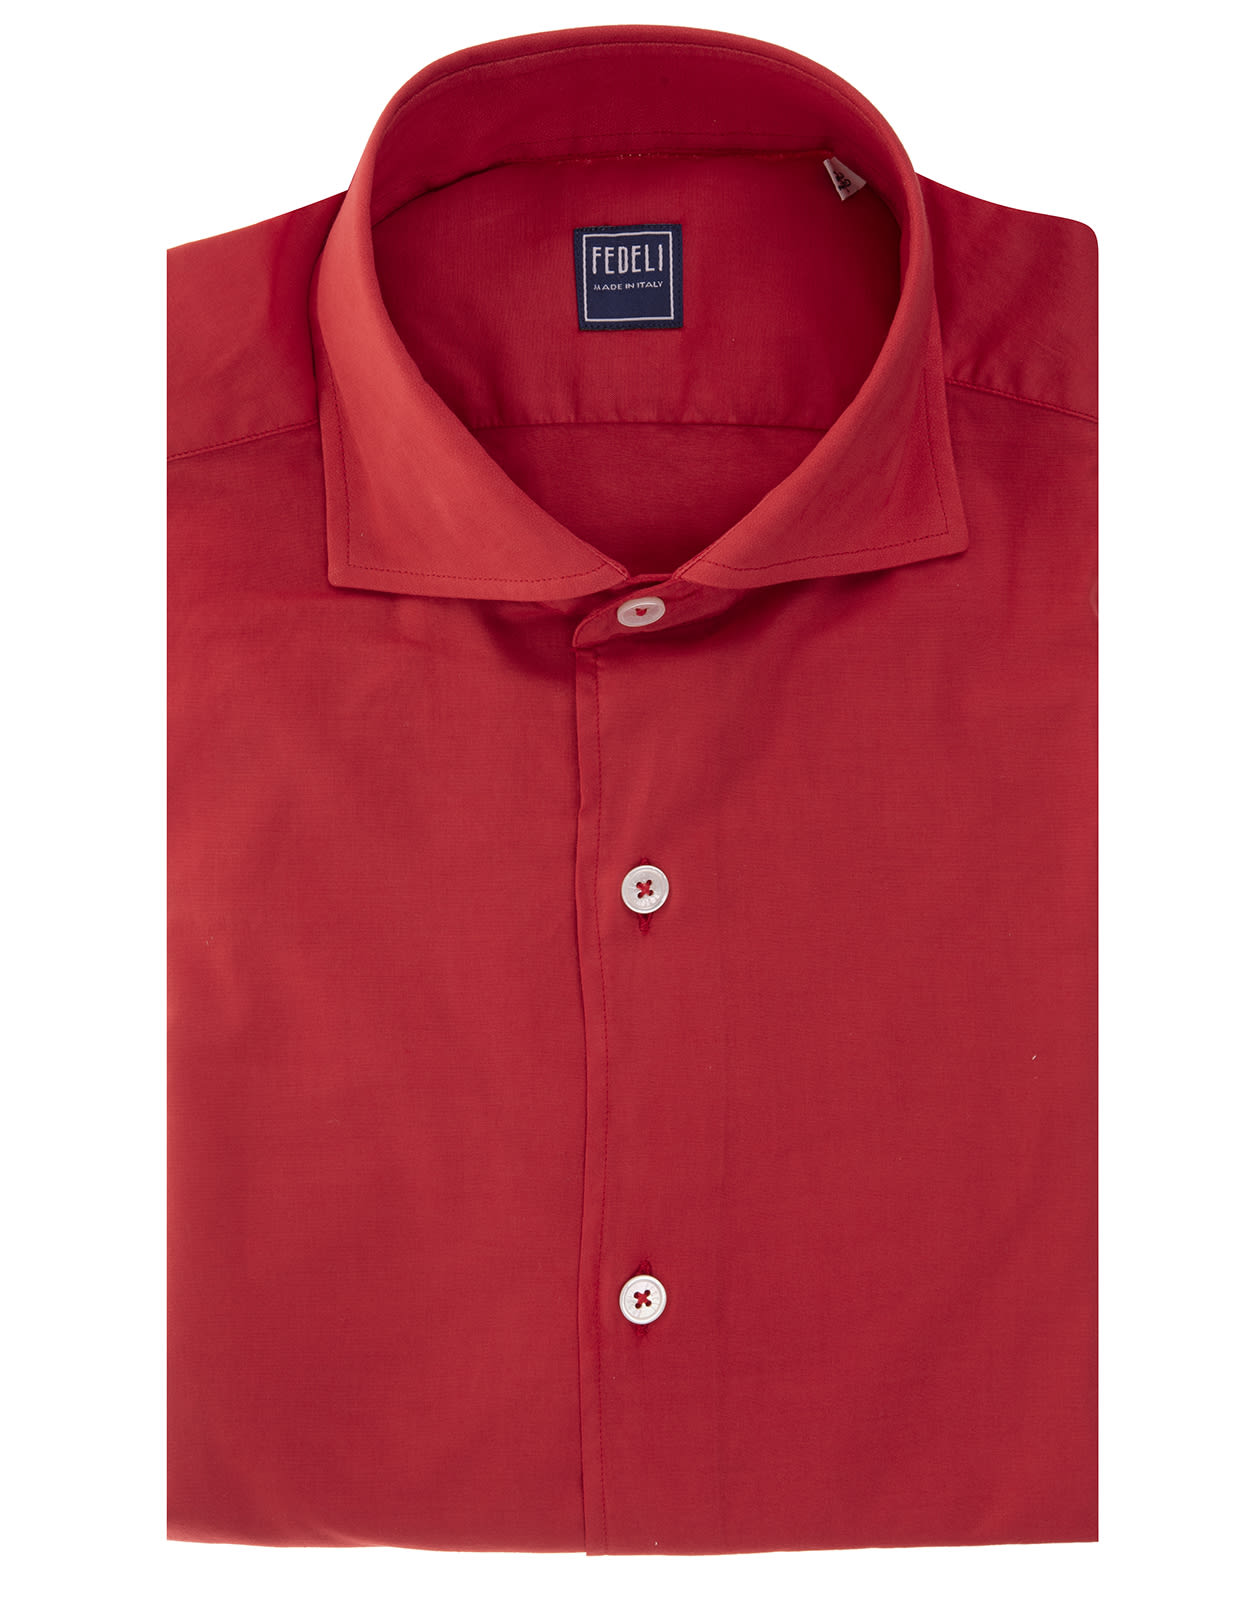 Fedeli Man Red Lightweight Cotton Shirt